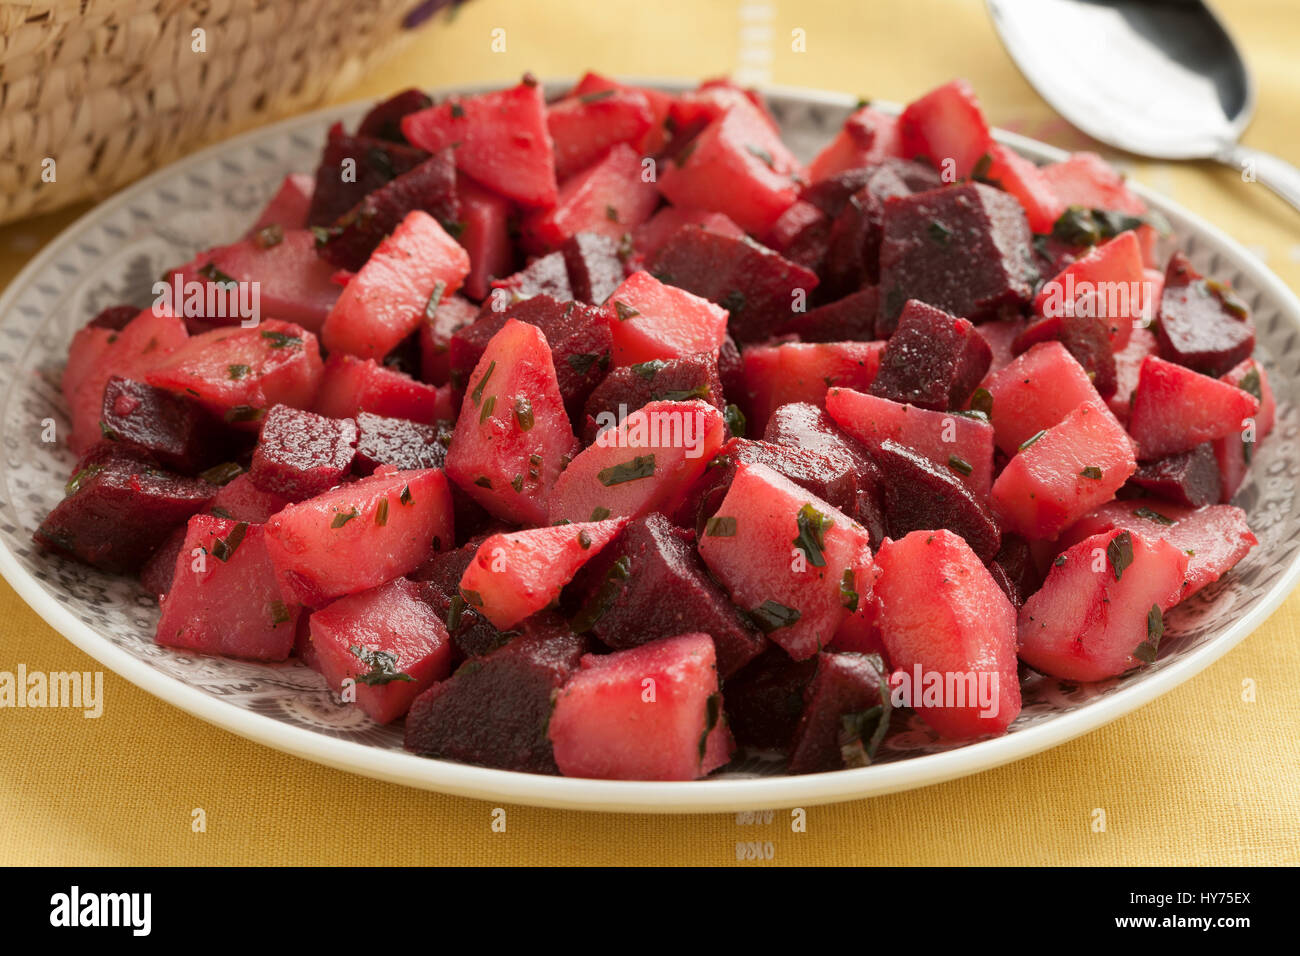 Schale mit marokkanischer Salat mit Rüben und Kartoffeln hautnah ...